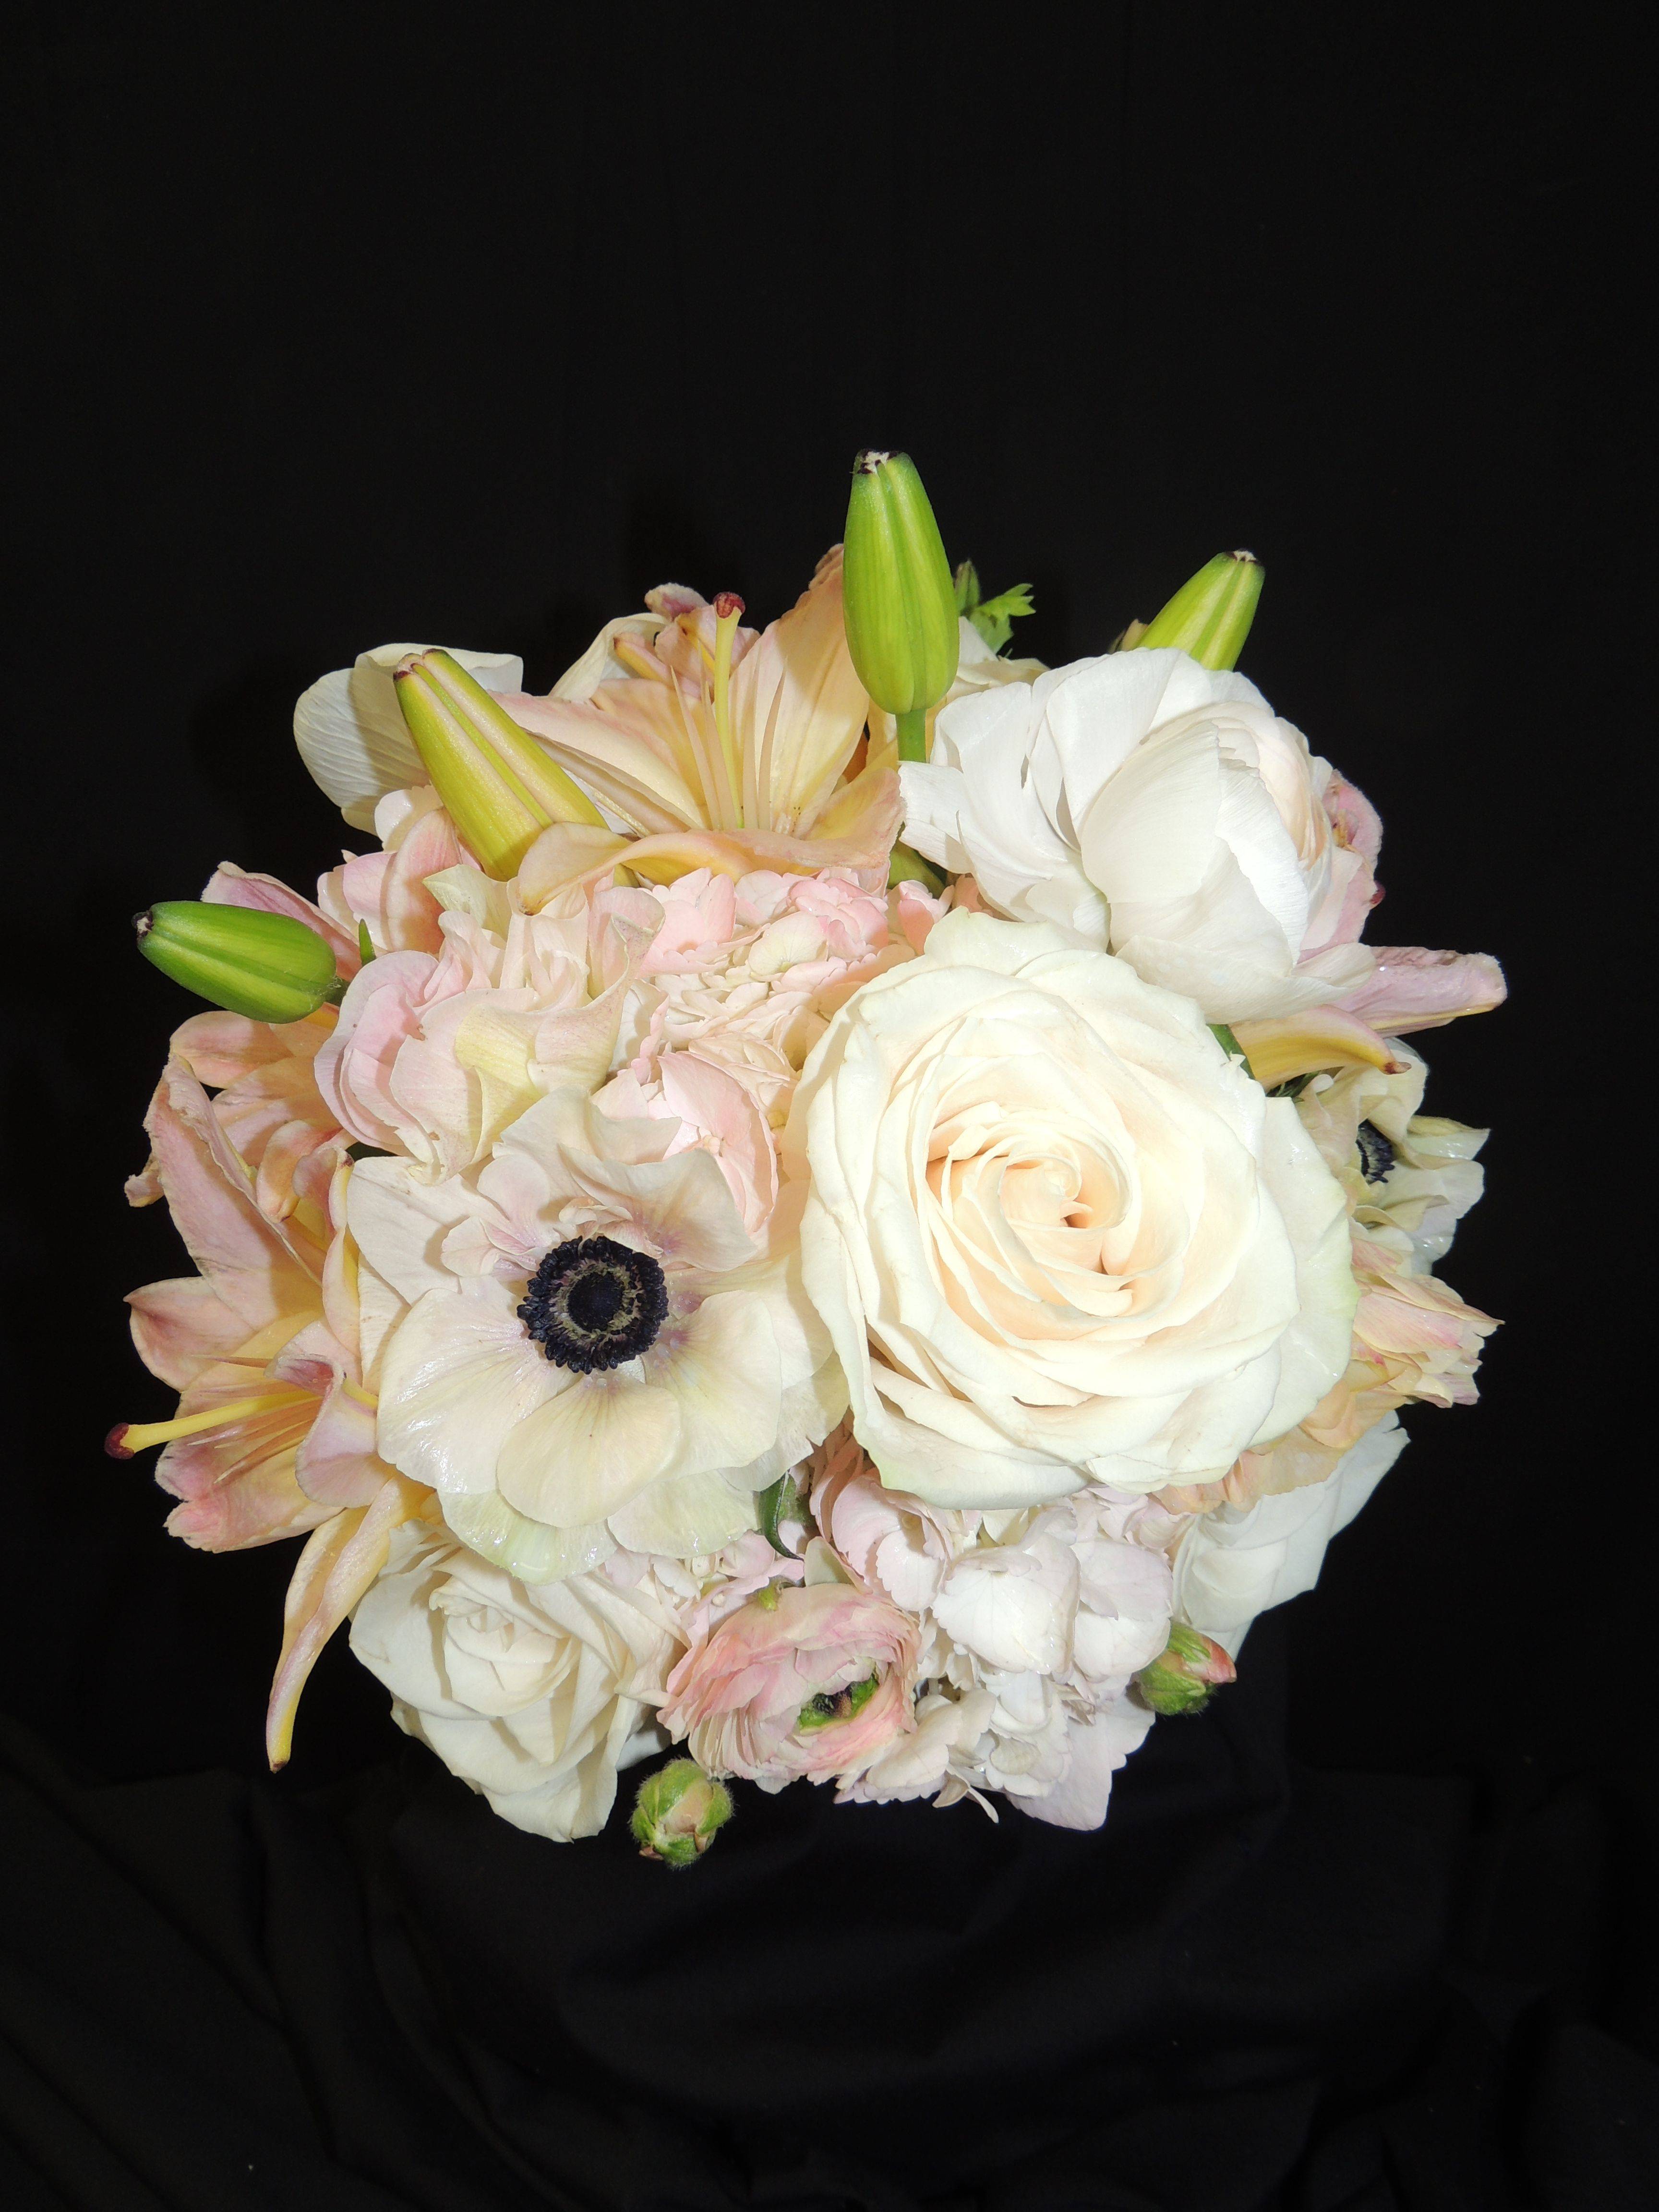 Most Gorgeous Garden Rose Bridal Bouquets